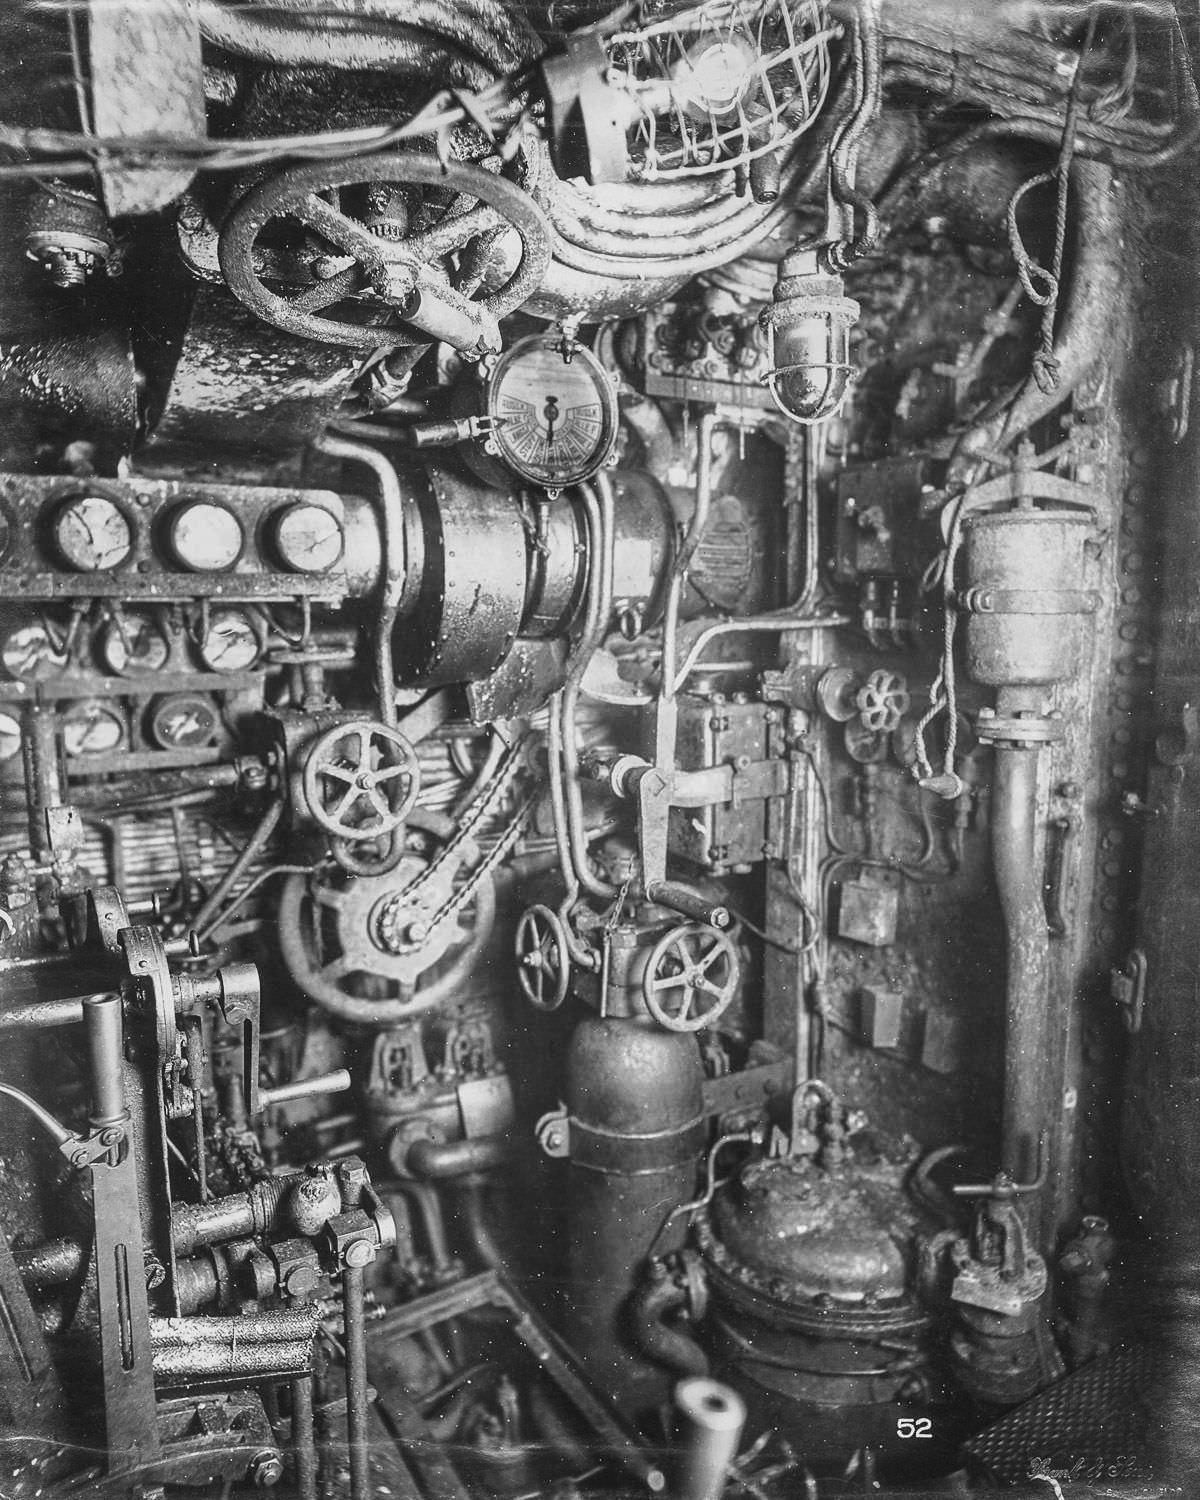 Diesel engine room.